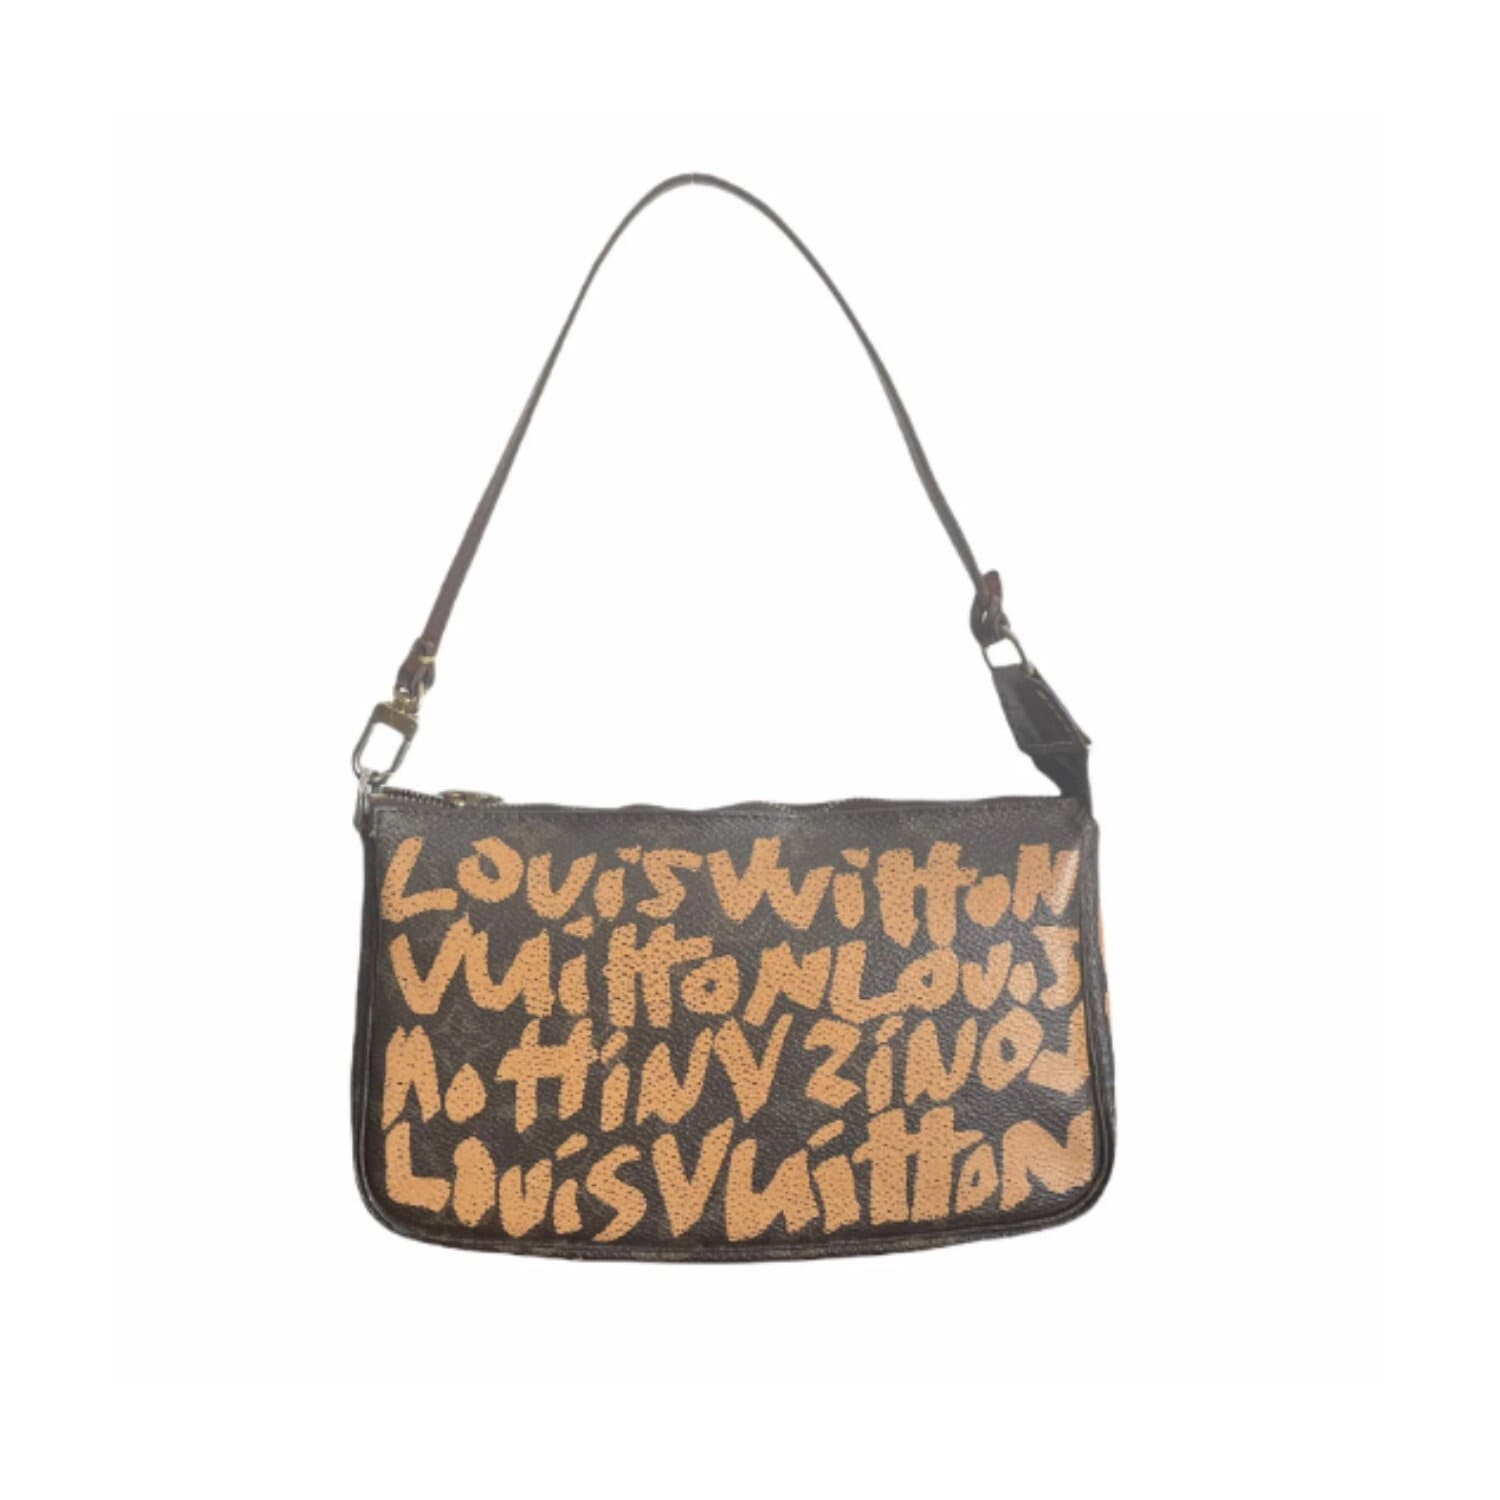 Louis Vuitton Bag Authentic Louis Vuitton Stephen Sprouse -  Denmark